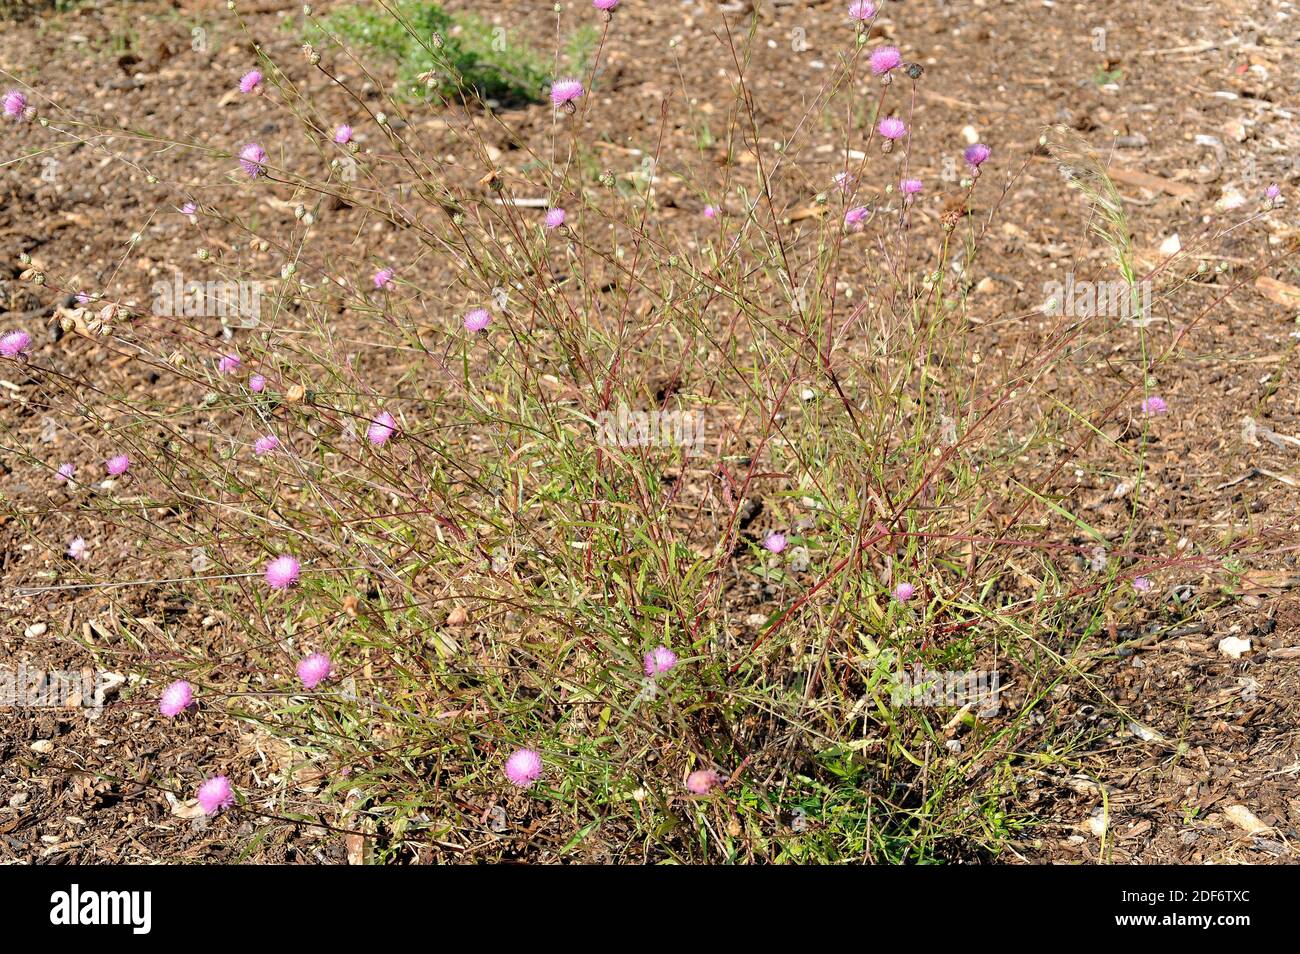 Pan de pastor (Mantisalca salmantica) es una hierba perenne nativa de la cuenca mediterránea. Planta floreciente. Foto de stock